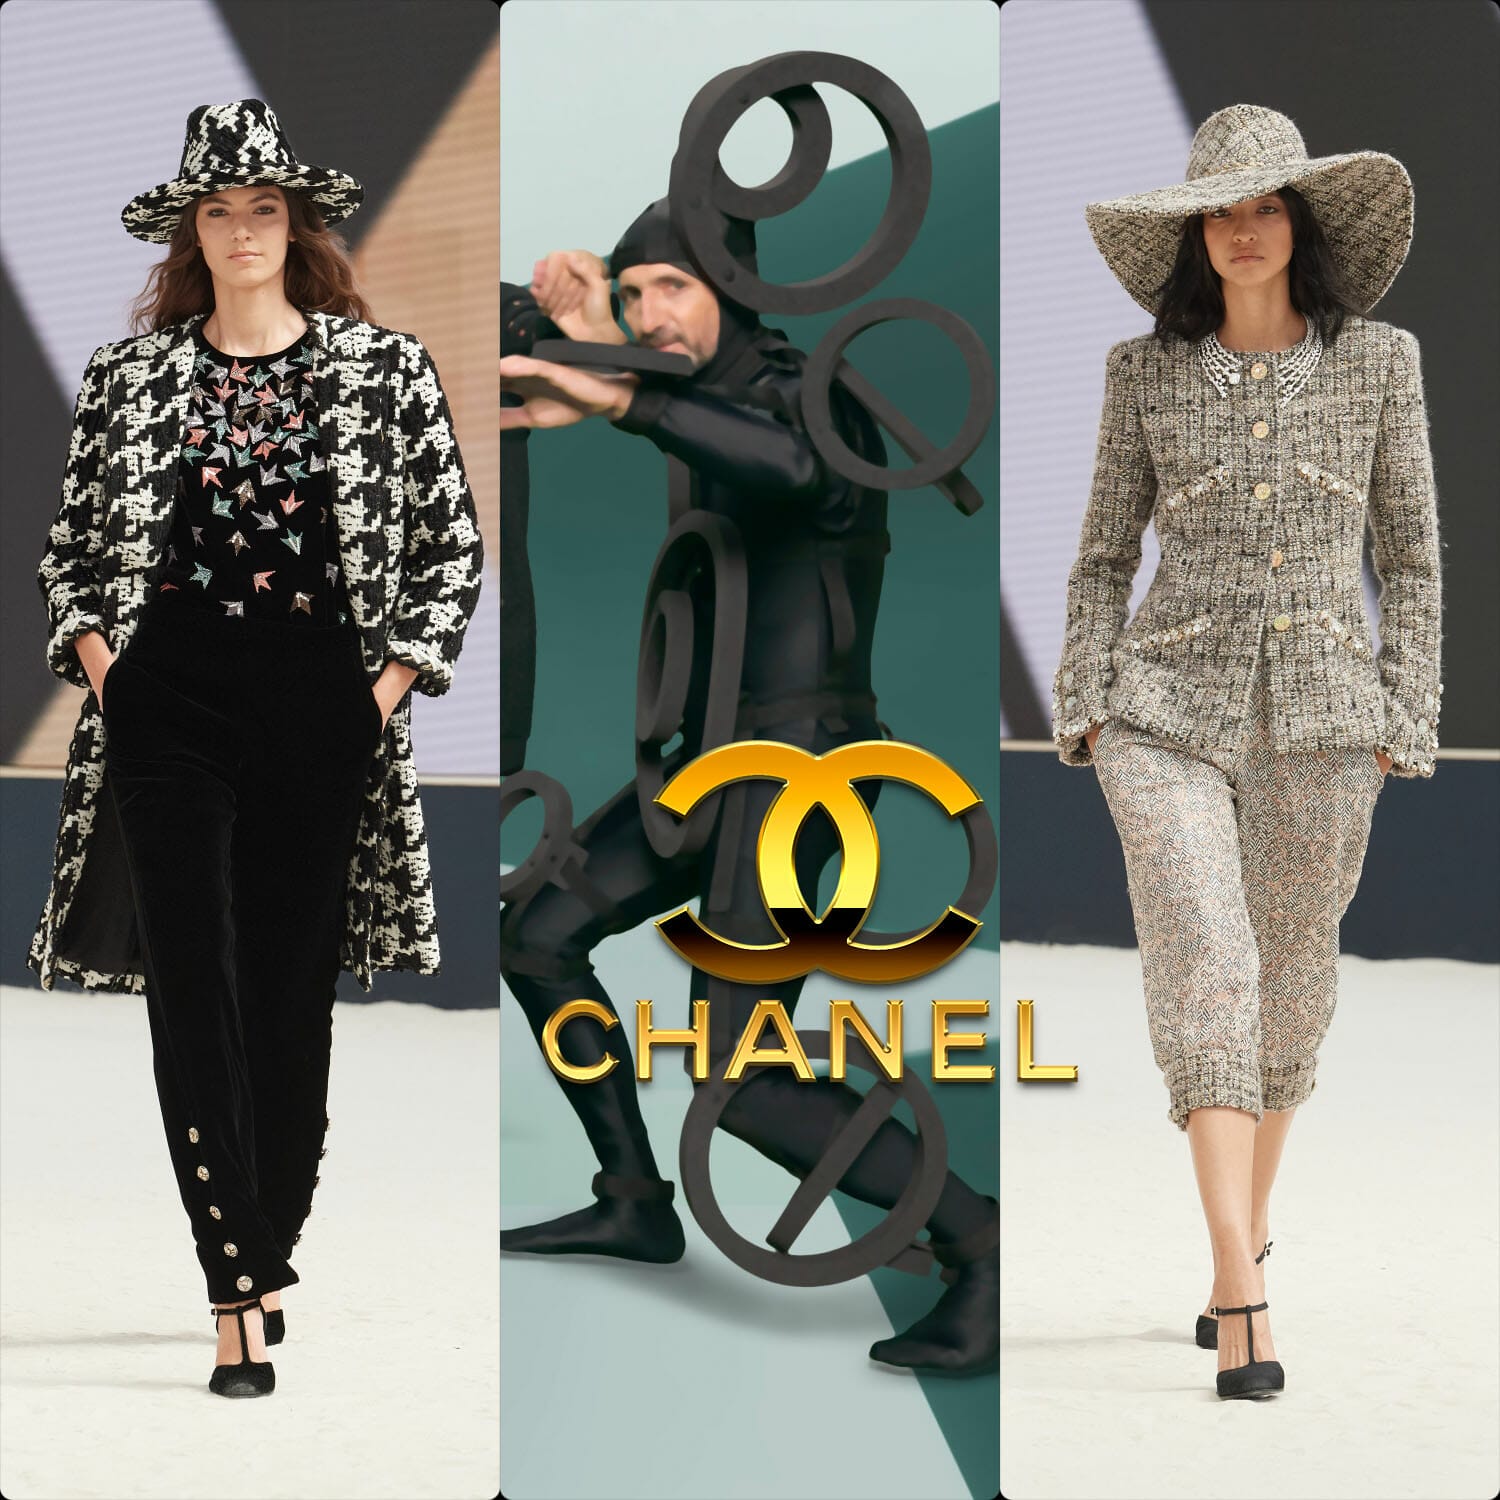 Chanel Fall/Winter 2022-23 Haute Couture Collection - A&E Magazine